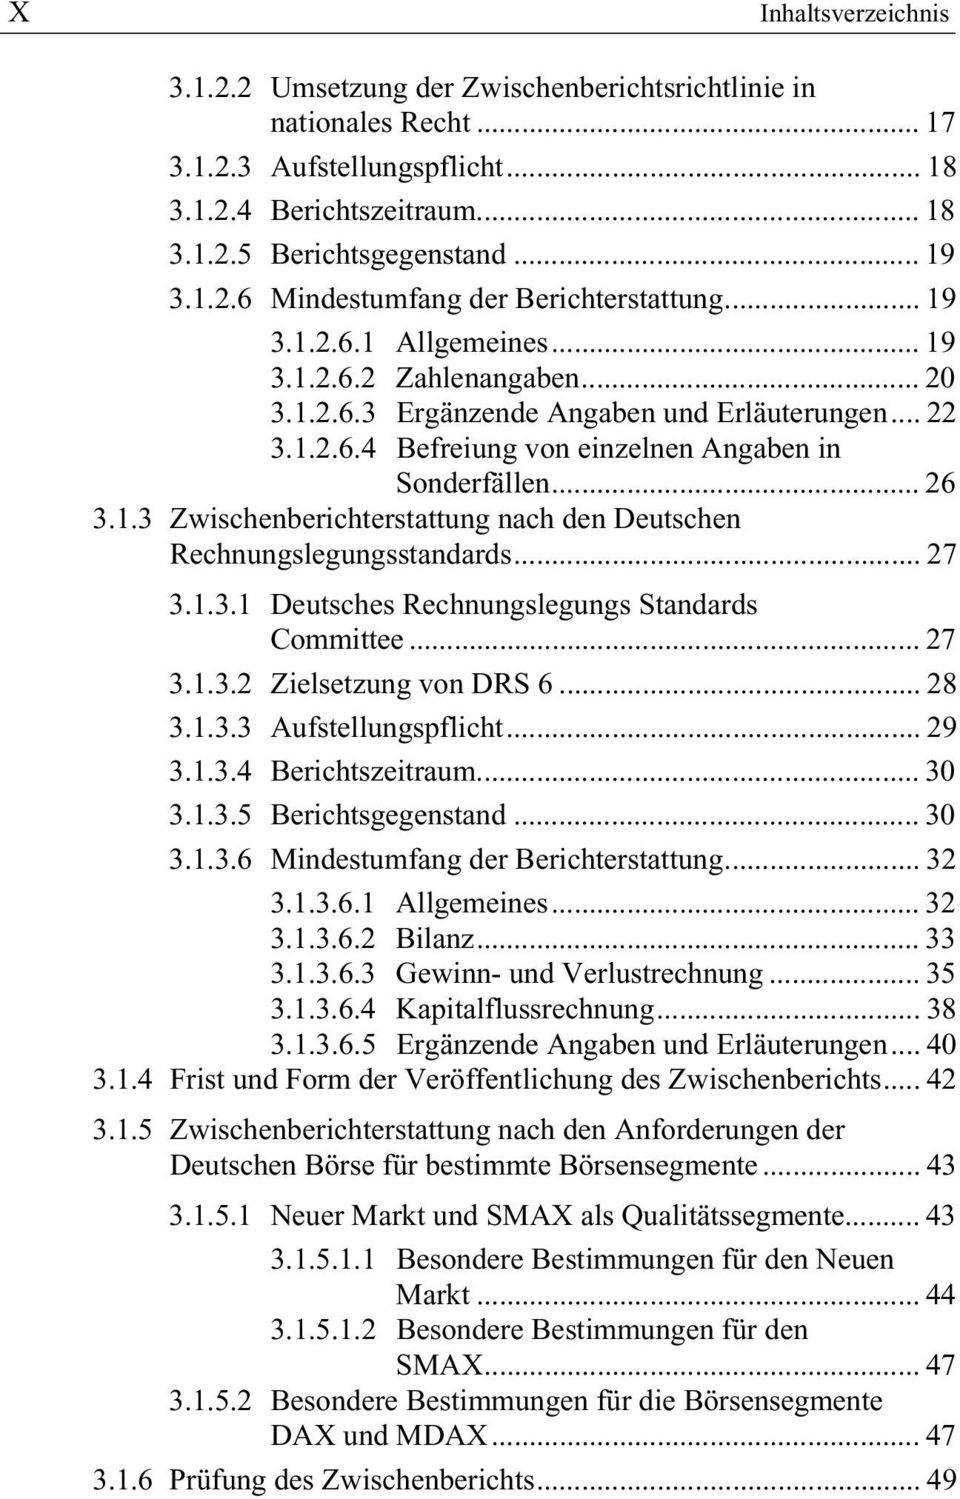 .. 27 3.1.3.1 Deutsches Rechnungslegungs Standards Committee... 27 3.1.3.2 Zielsetzung von DRS 6... 28 3.1.3.3 Aufstellungspflicht... 29 3.1.3.4 Berichtszeitraum... 30 3.1.3.5 Berichtsgegenstand.